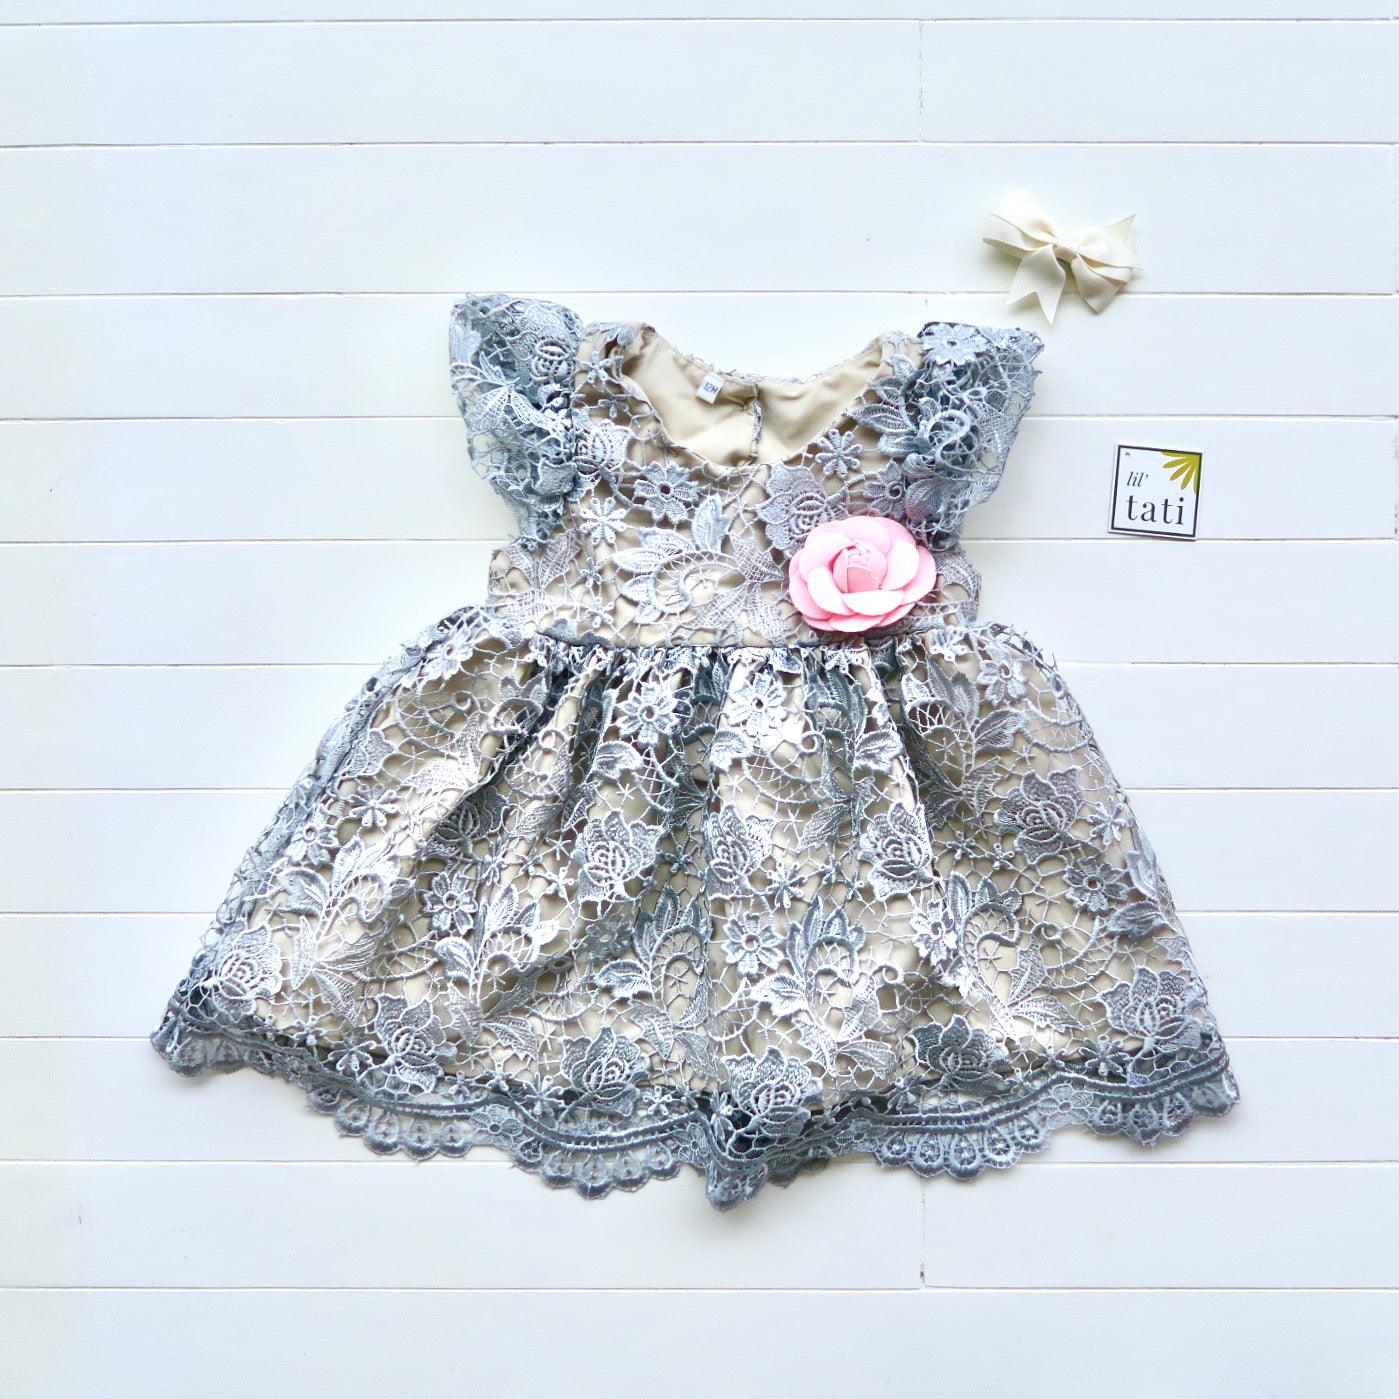 Lotus Dress in Silver Lace - Lil' Tati